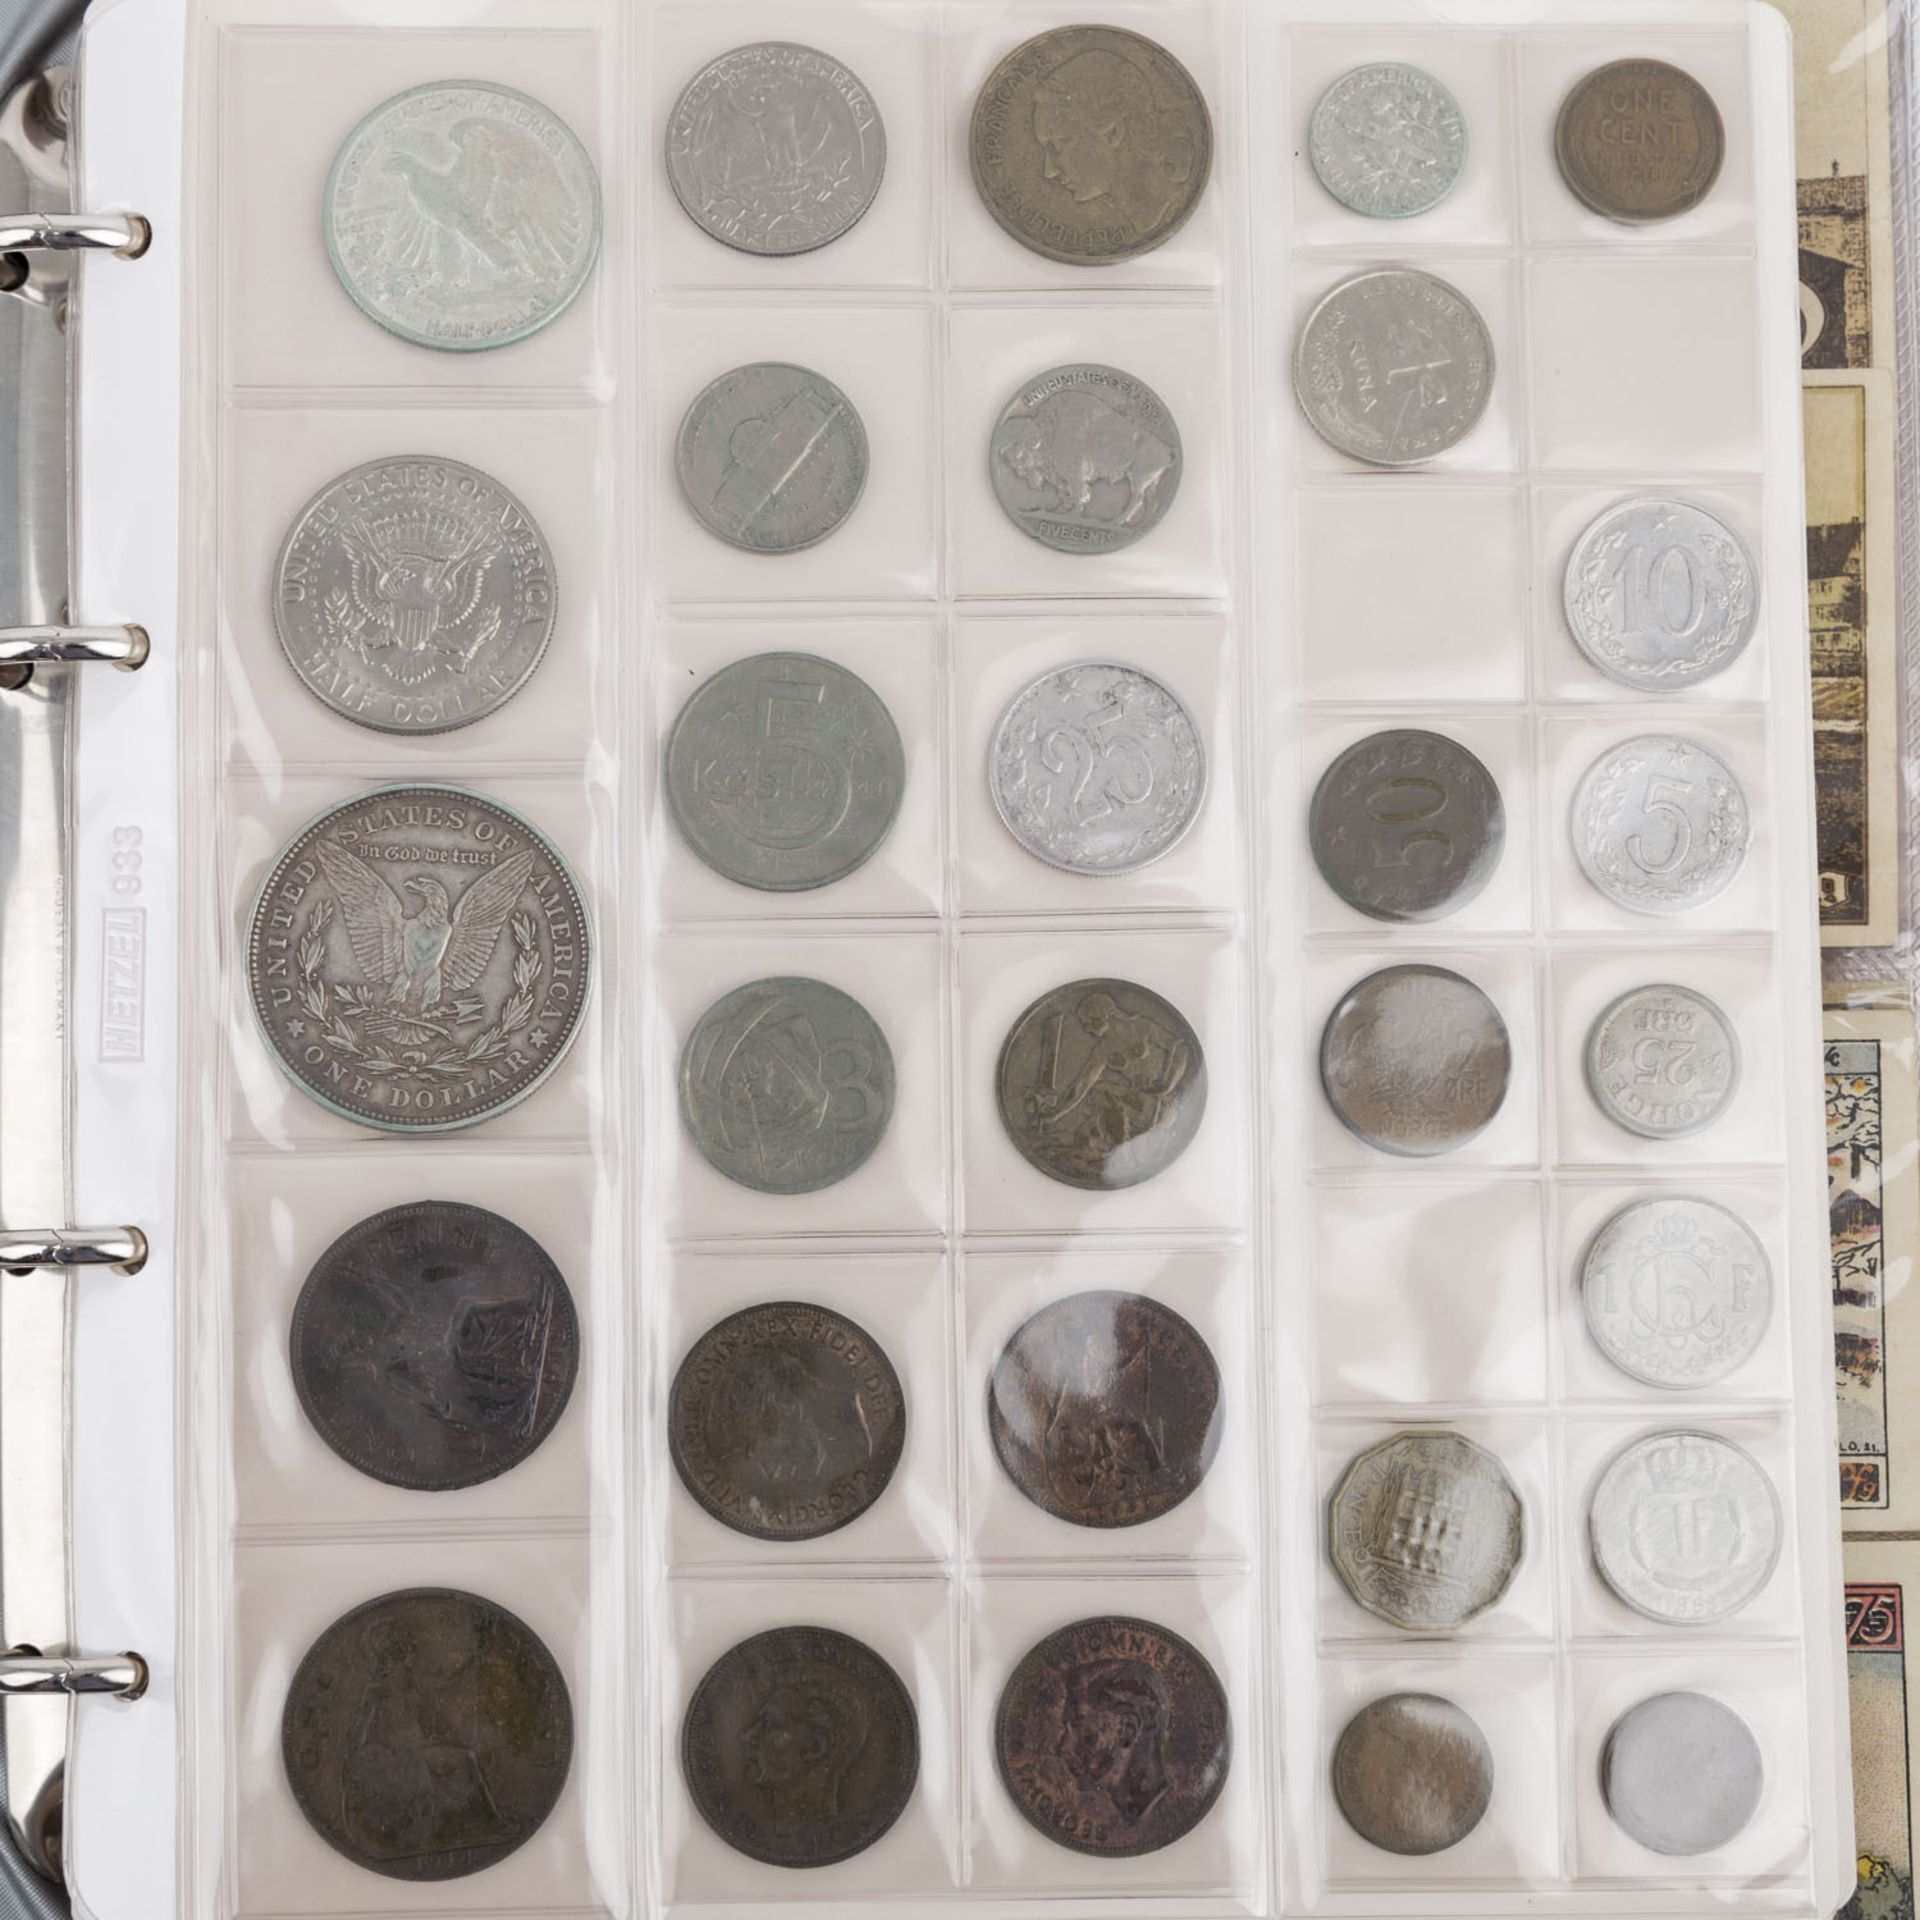 2 Alben mit Münzen und Banknoten –darunter BRD 5 und 10 DM, versch. Jahrgänge, ca. 390 DM nominal, - Bild 5 aus 7